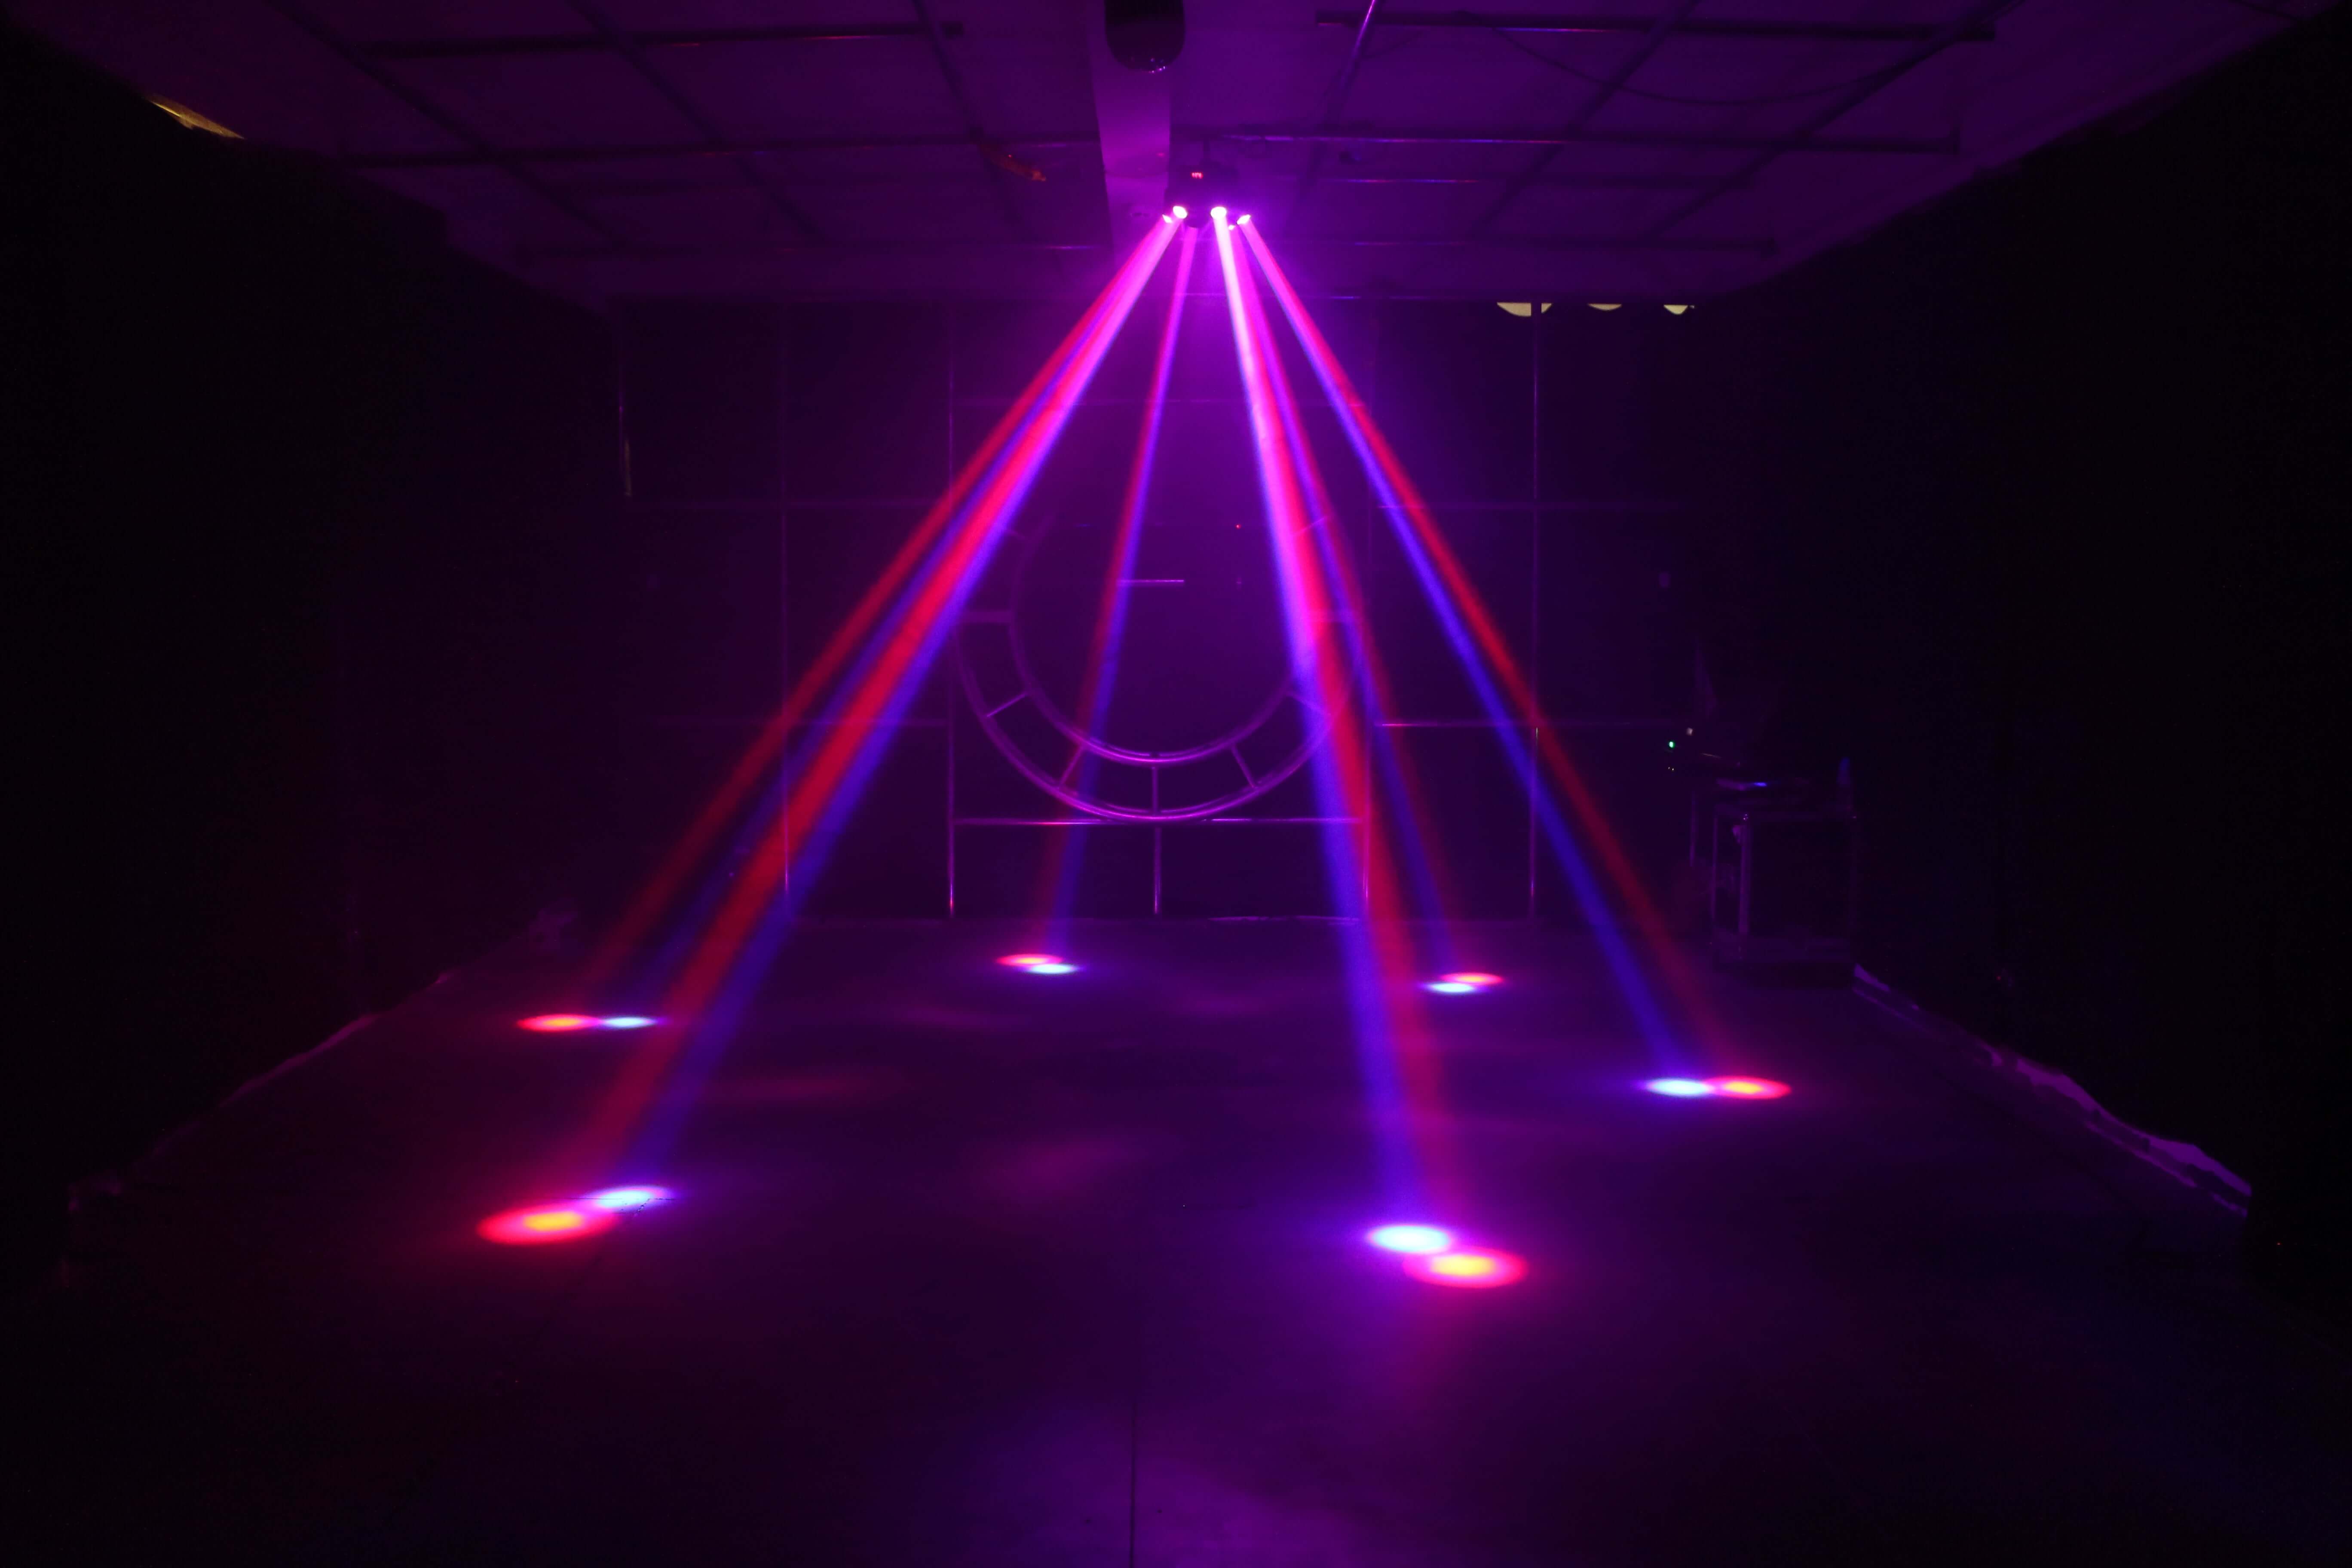 Bühnenlichter 6 Strahlen RGBW LED Moving Head Strahllicht DMX Party Club Bar Bühnenbeleuchtung Par Beleuchtung Sound aktiviert für DJ KTV Disco Party Hochzeit Konzert Festival 